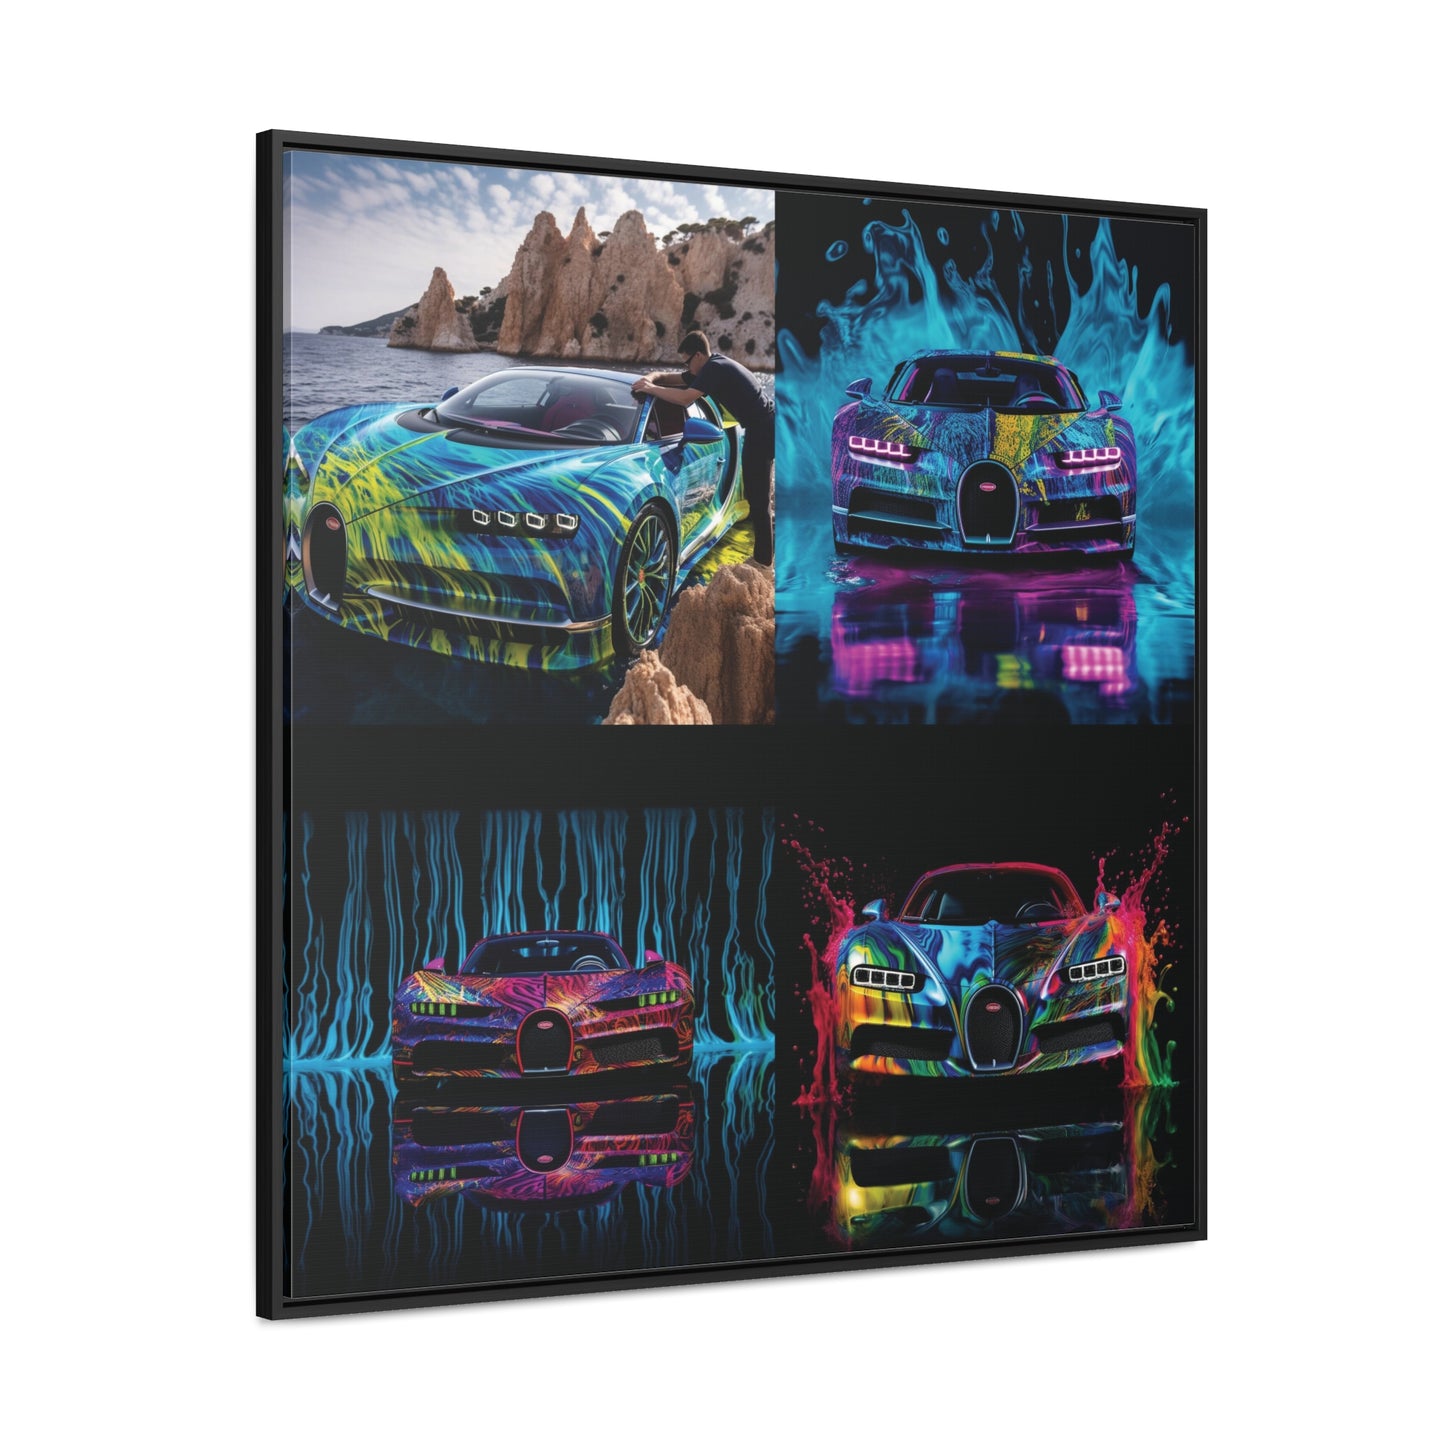 Gallery Canvas Wraps, Square Frame Bugatti Water 5